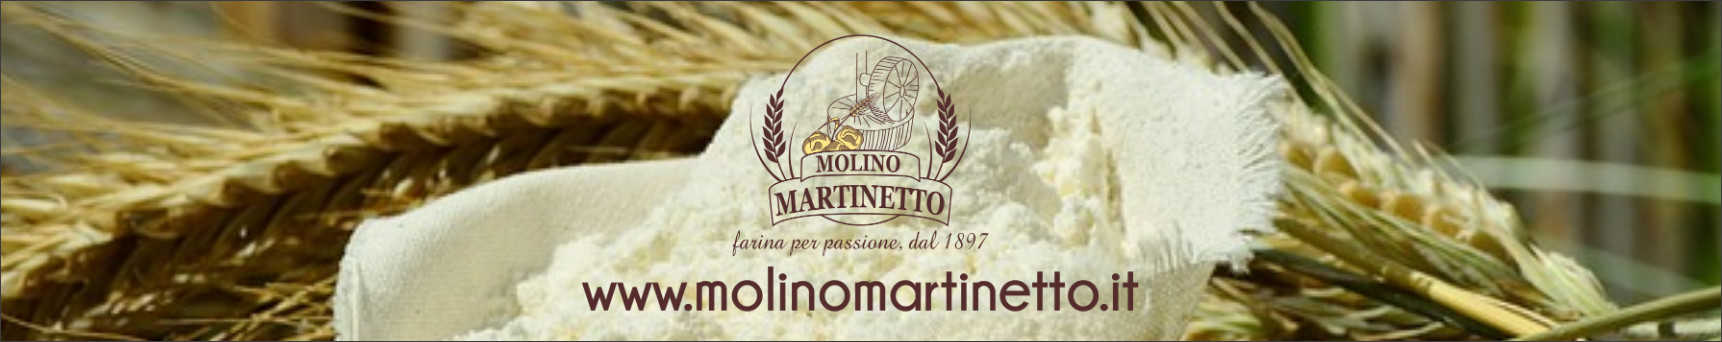 molino-martinetto-banner-farina-rivista-promuovere